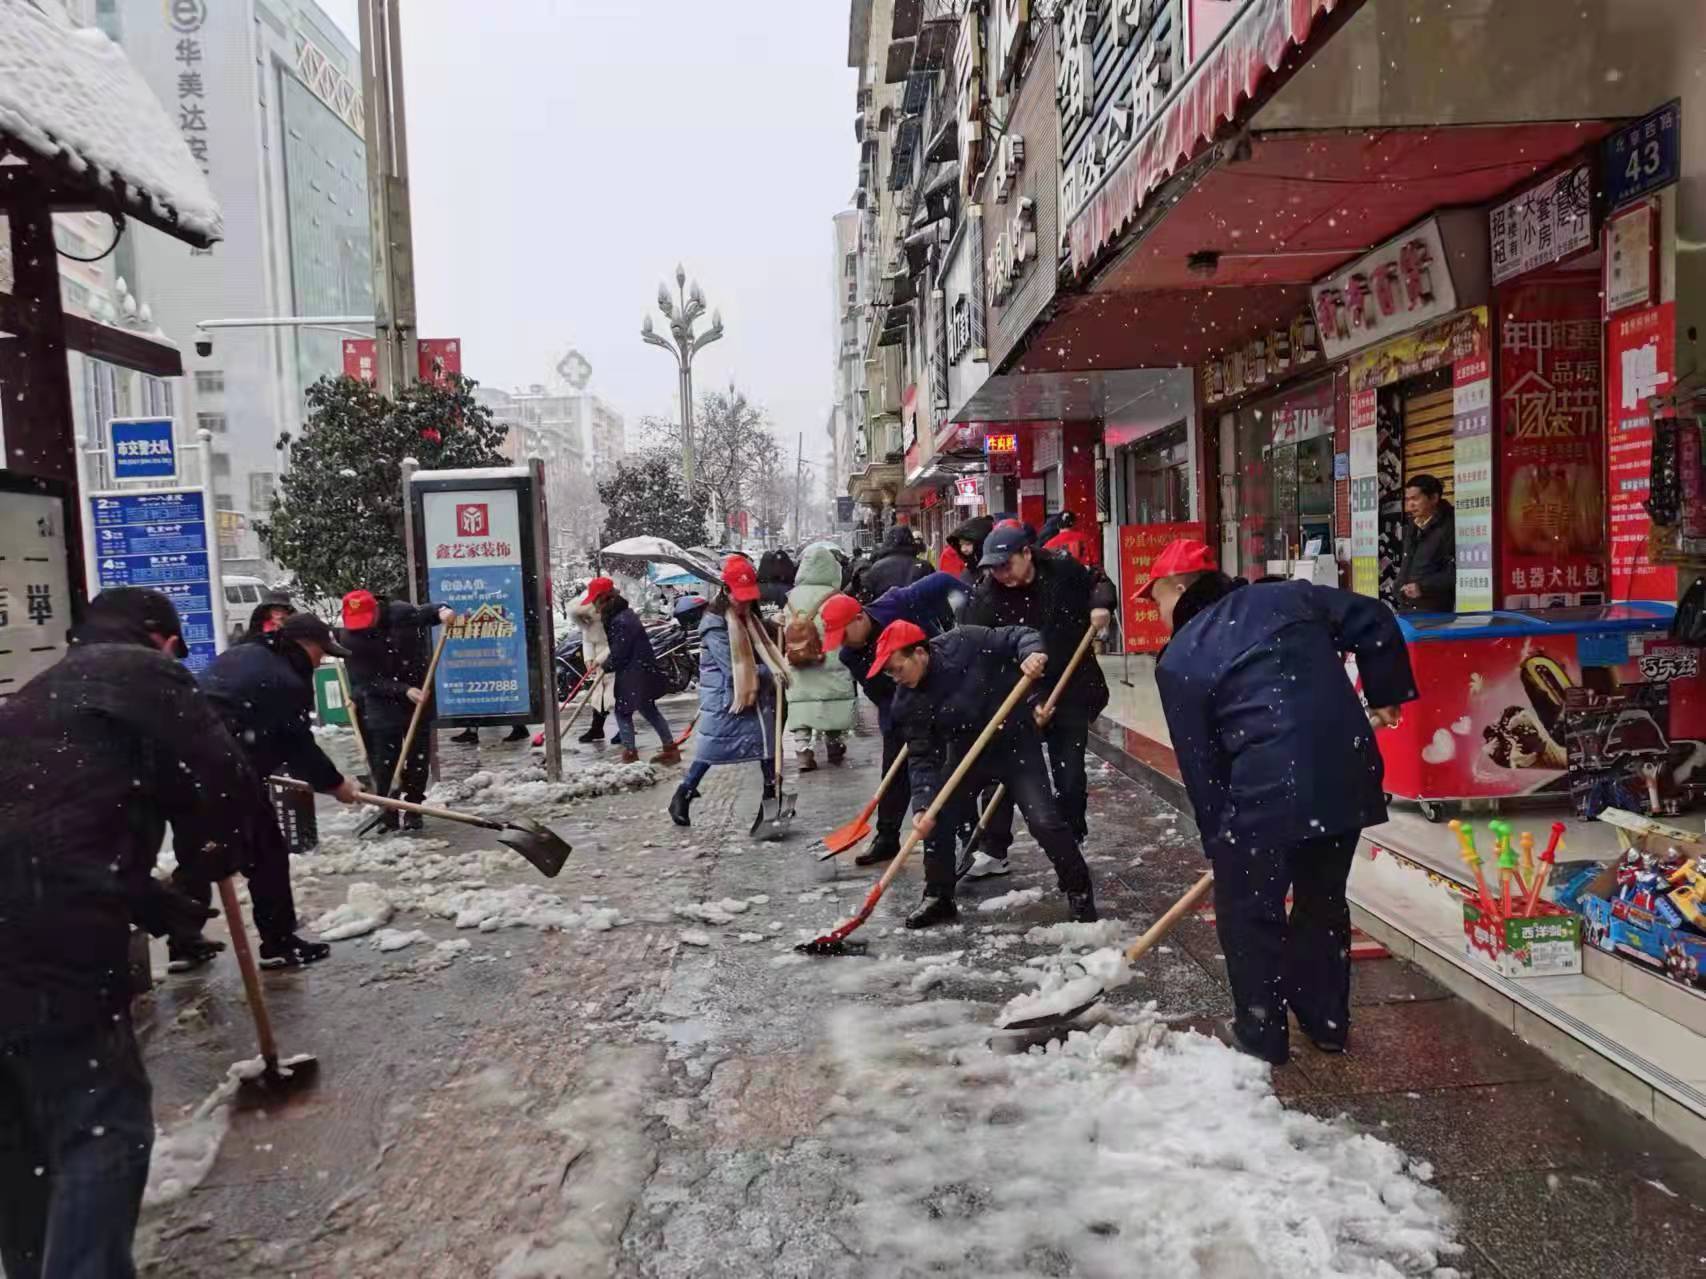  “破冰除雪·情暖凯城”——贵州省凯里市监局开展义务扫雪志愿服务活动